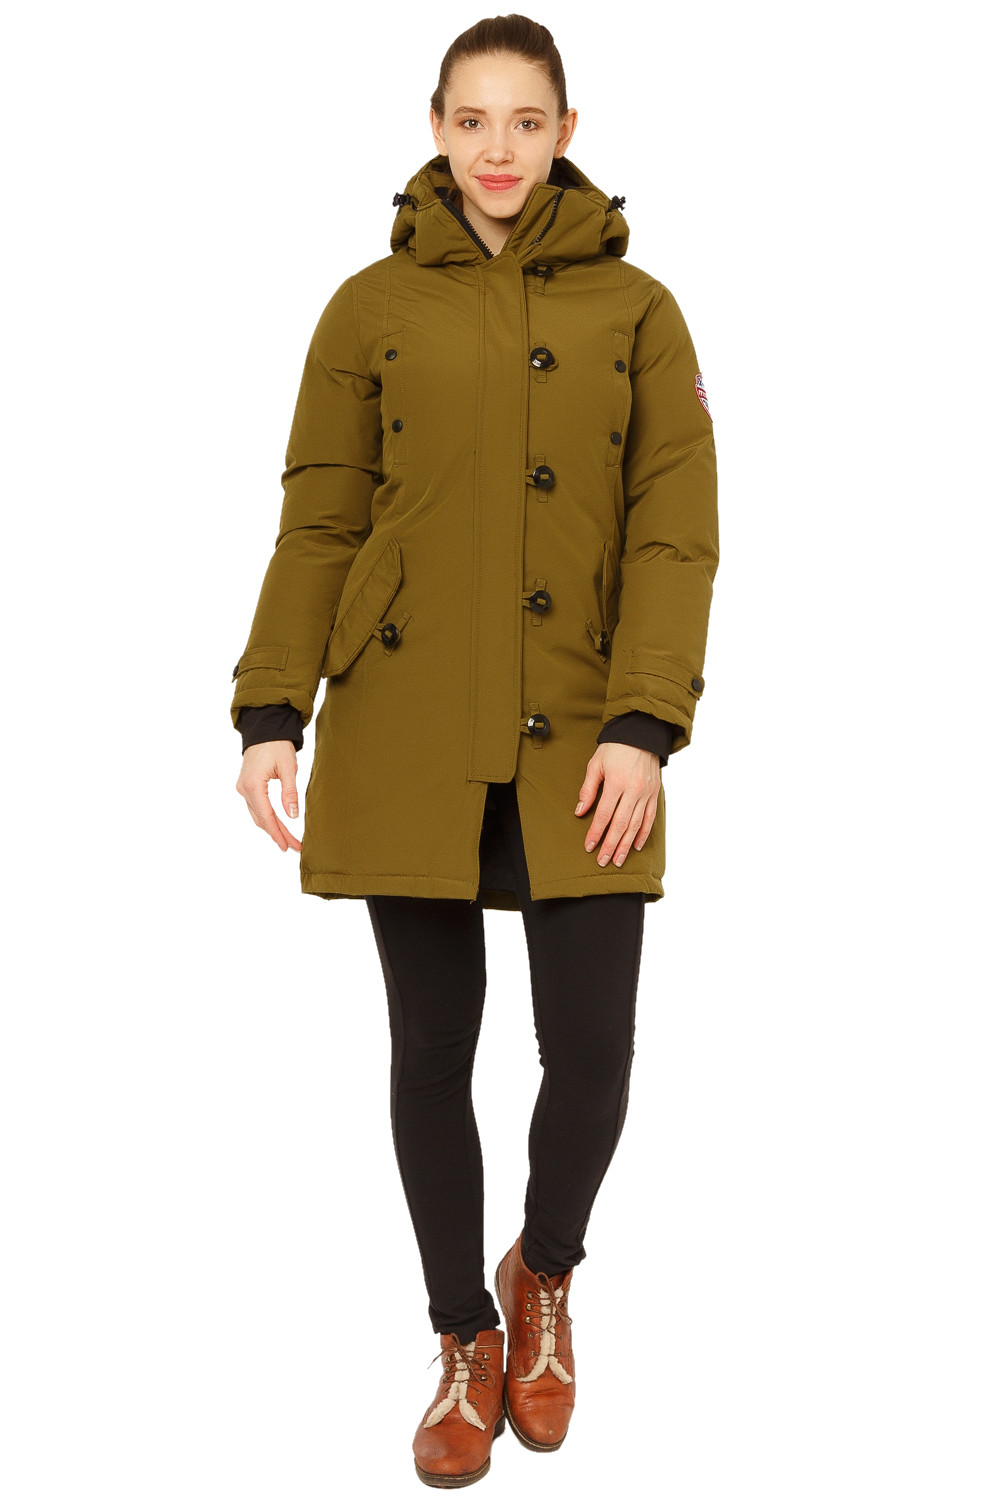 Купить оптом Куртка парка зимняя женская цвета хаки 1802Kh